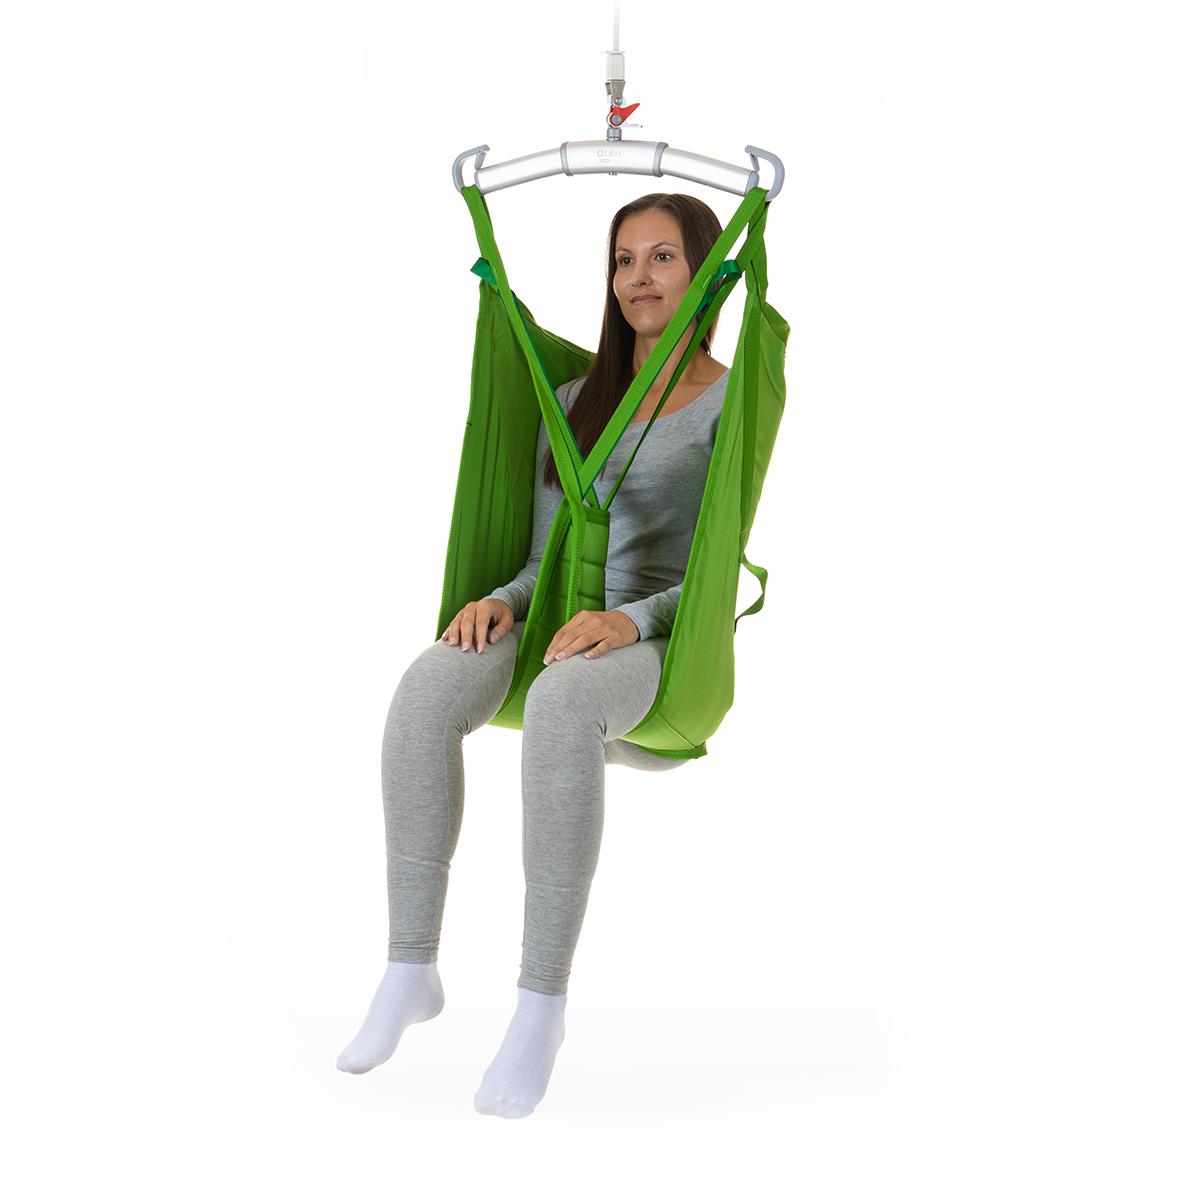 En patient sitter i en Soft HighBack sling med hög rygg